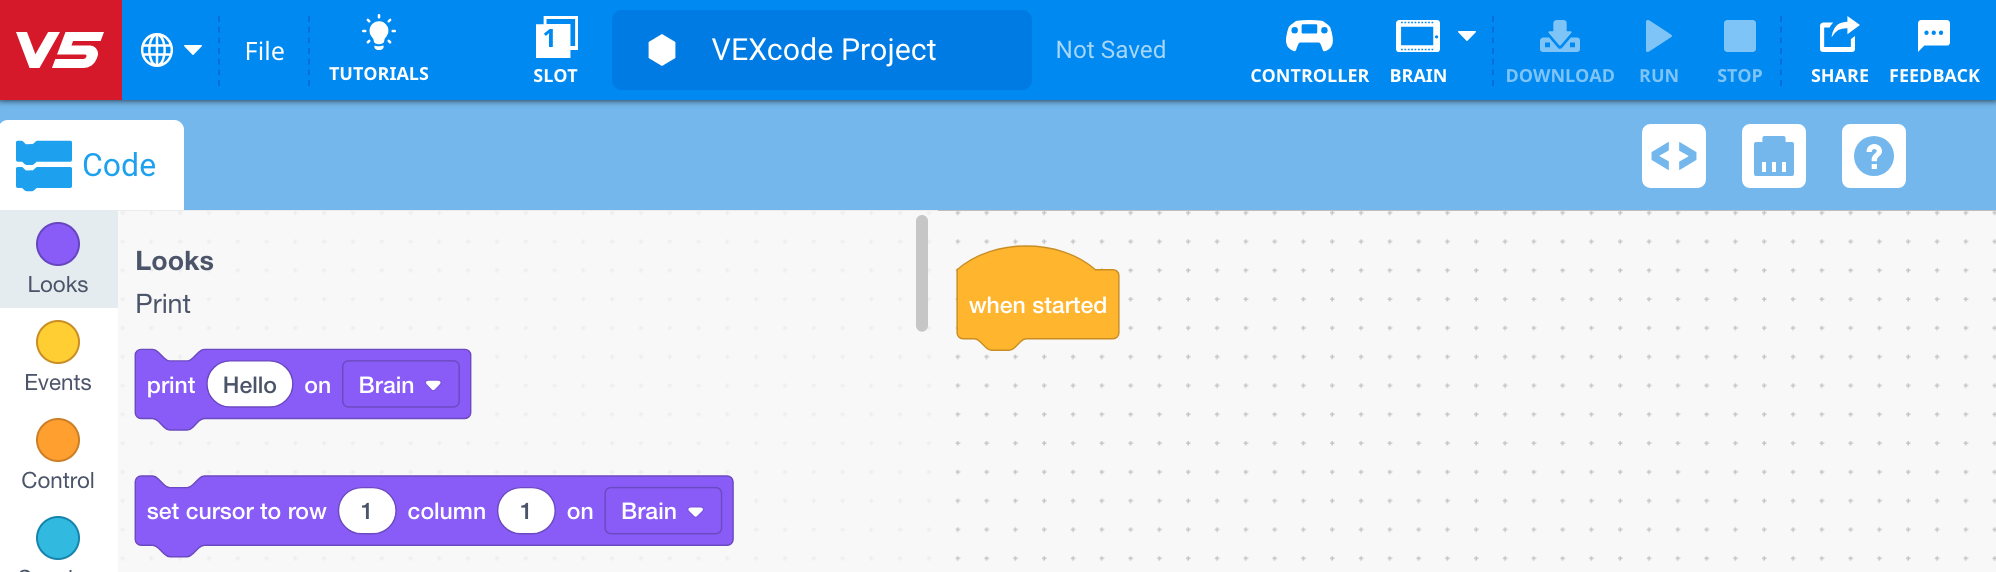 Start VEXcode V5